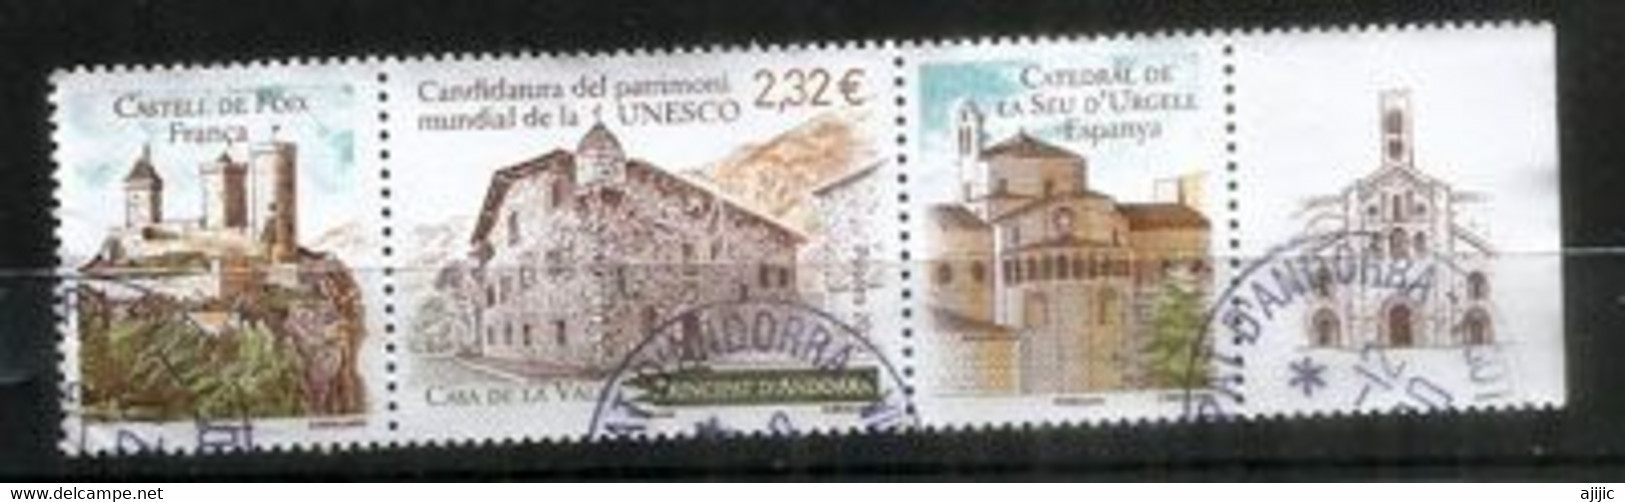 UNESCO.ANDORRA-FRANCE-ESPAGNE (Candidature) Chateau De Foix,Cathedrale Seo Urgell,Casa De La Vall,oblitéré - Oblitérés